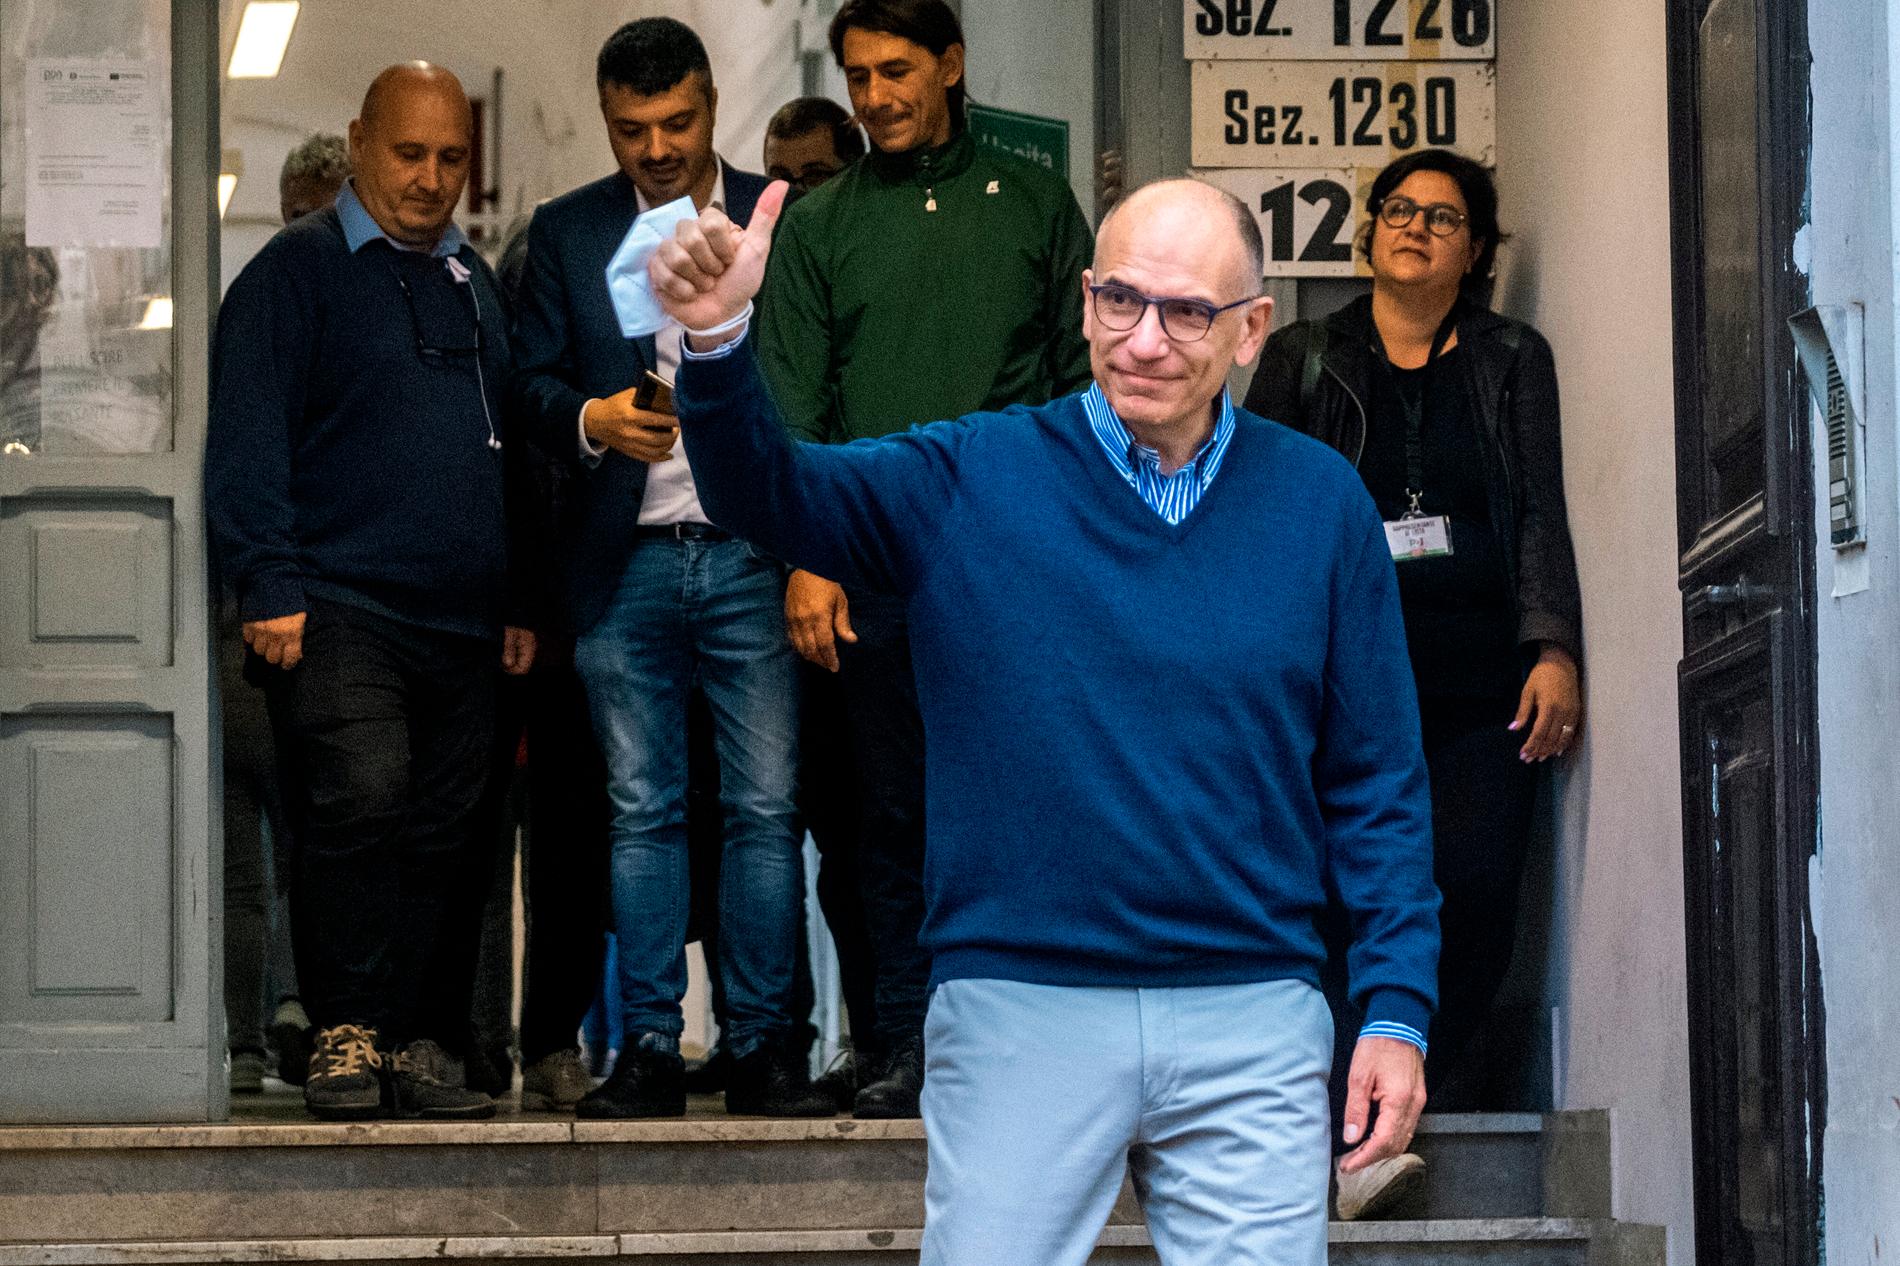 Melonis motståndare Enrico Letta, partiledare för socialdemokratiska PD, röstade i en skola i Rom under söndagsförmiddagen.